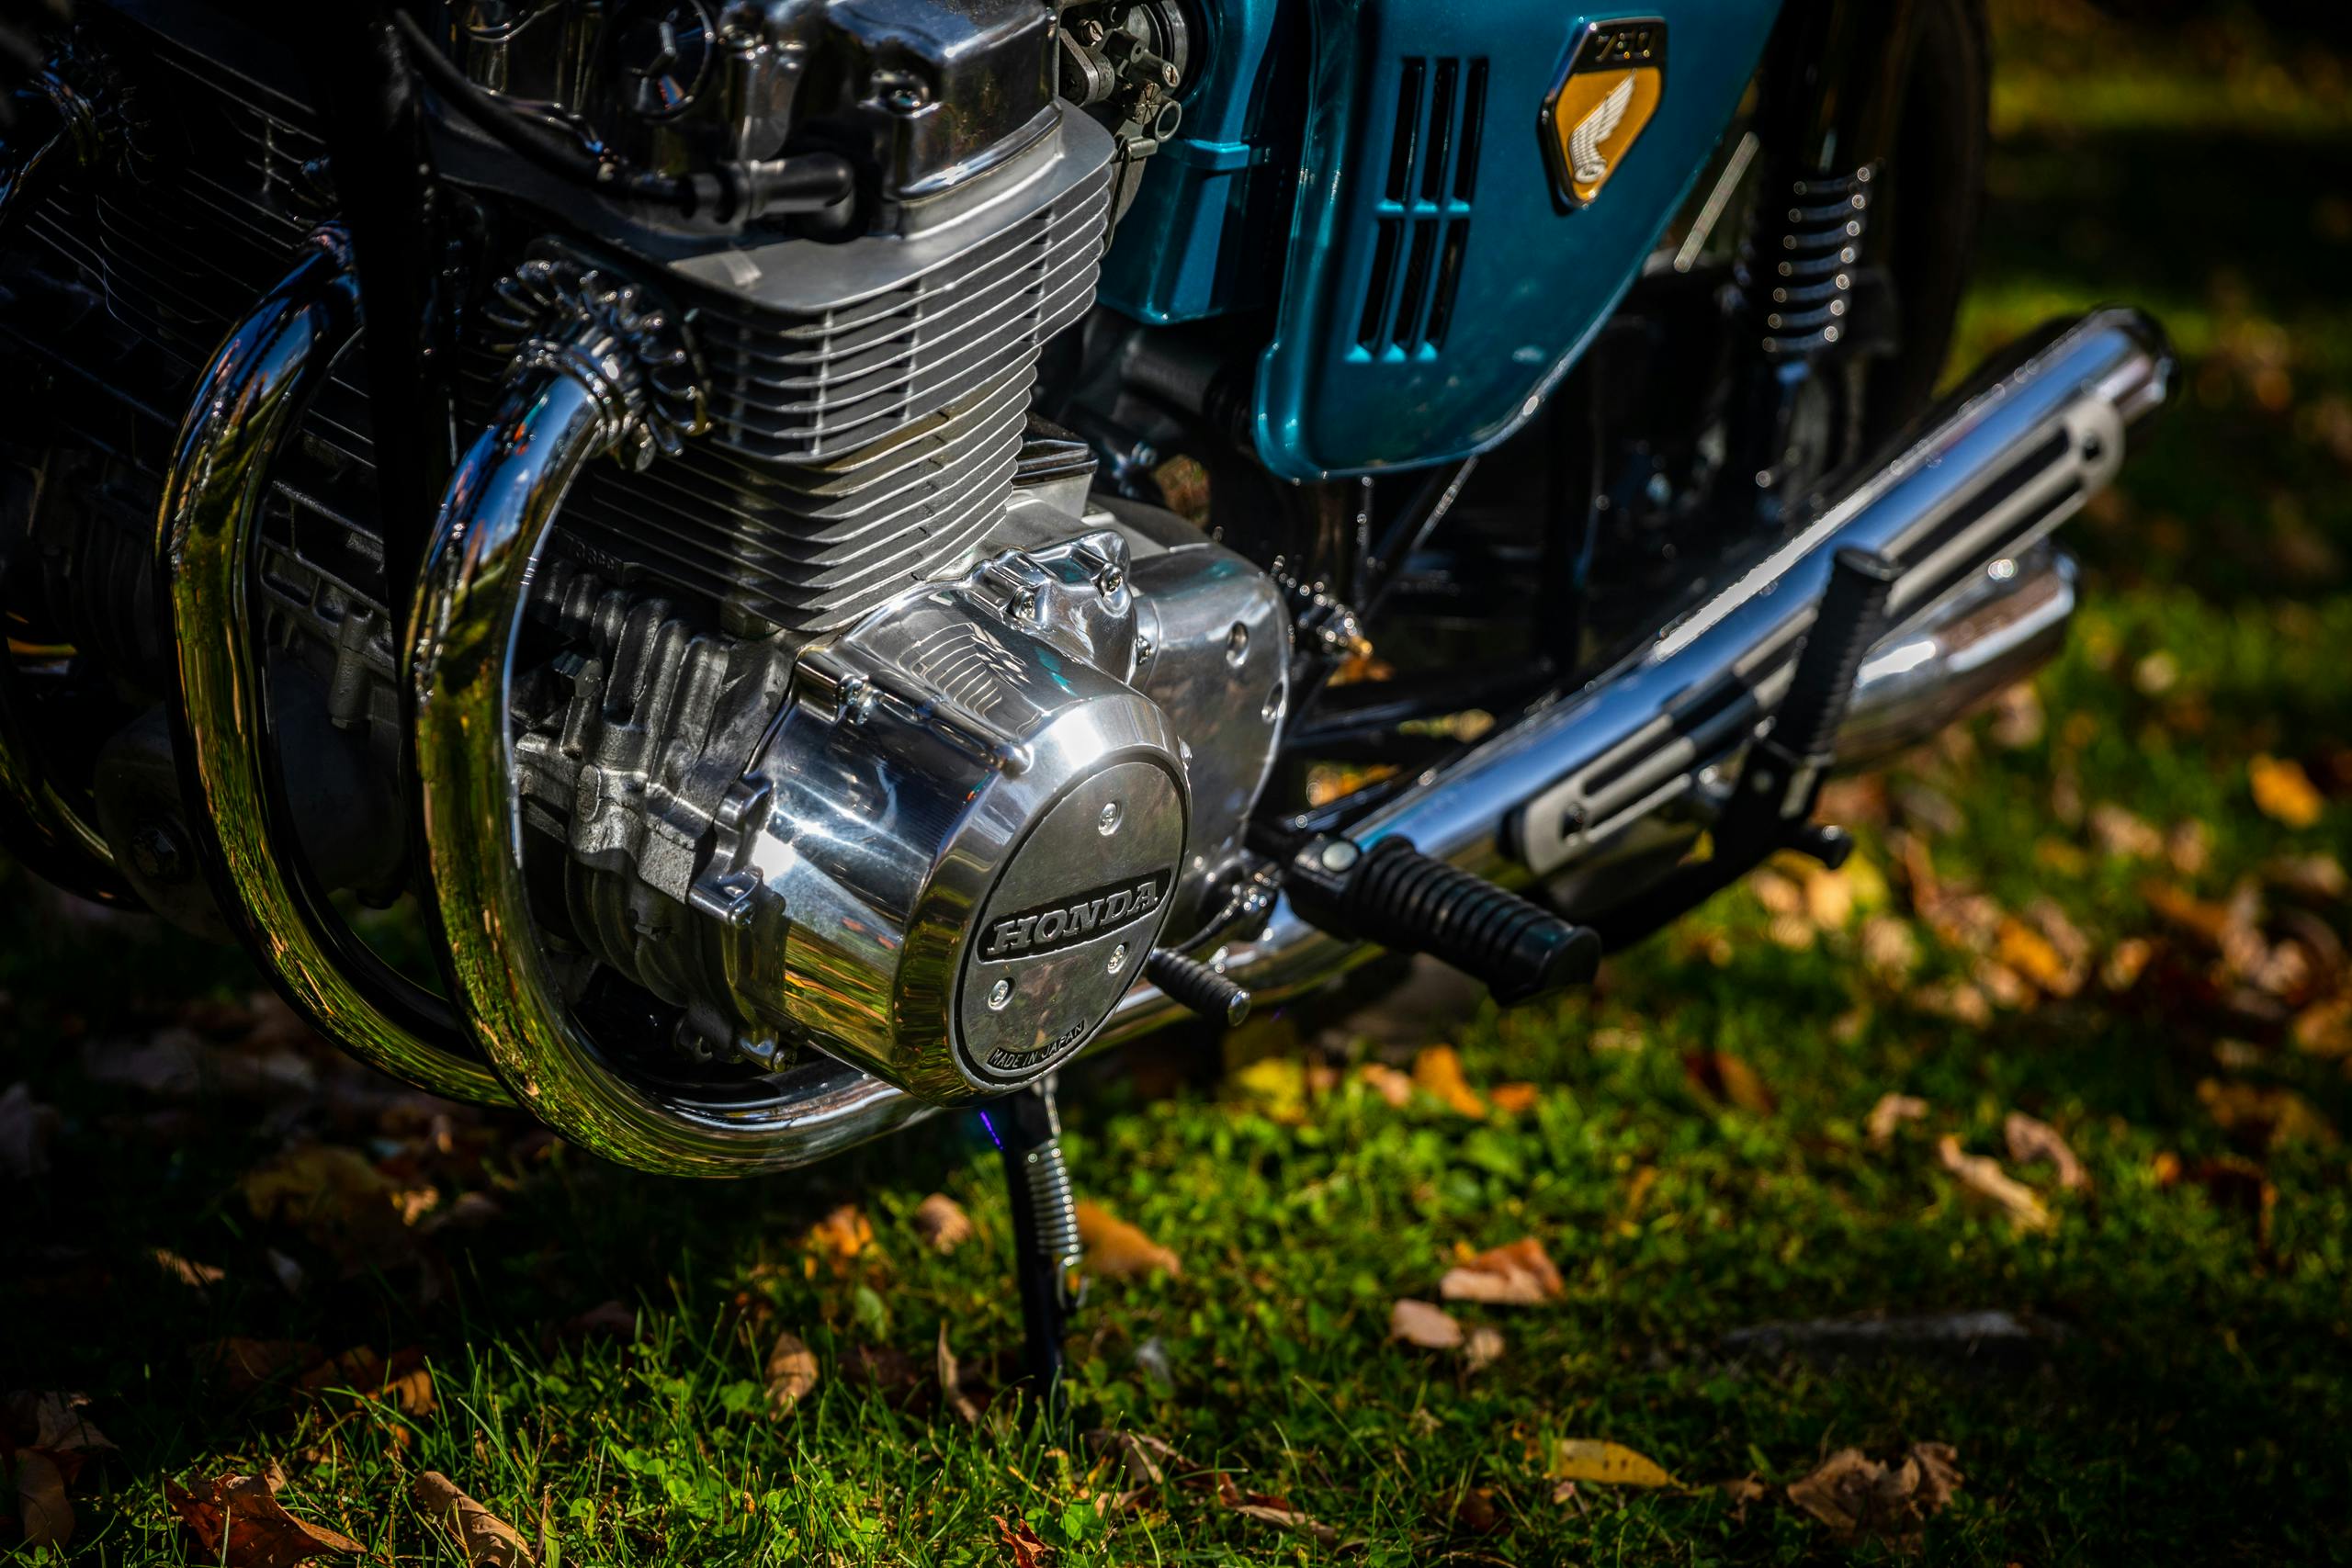 Honda CB750 engine detail